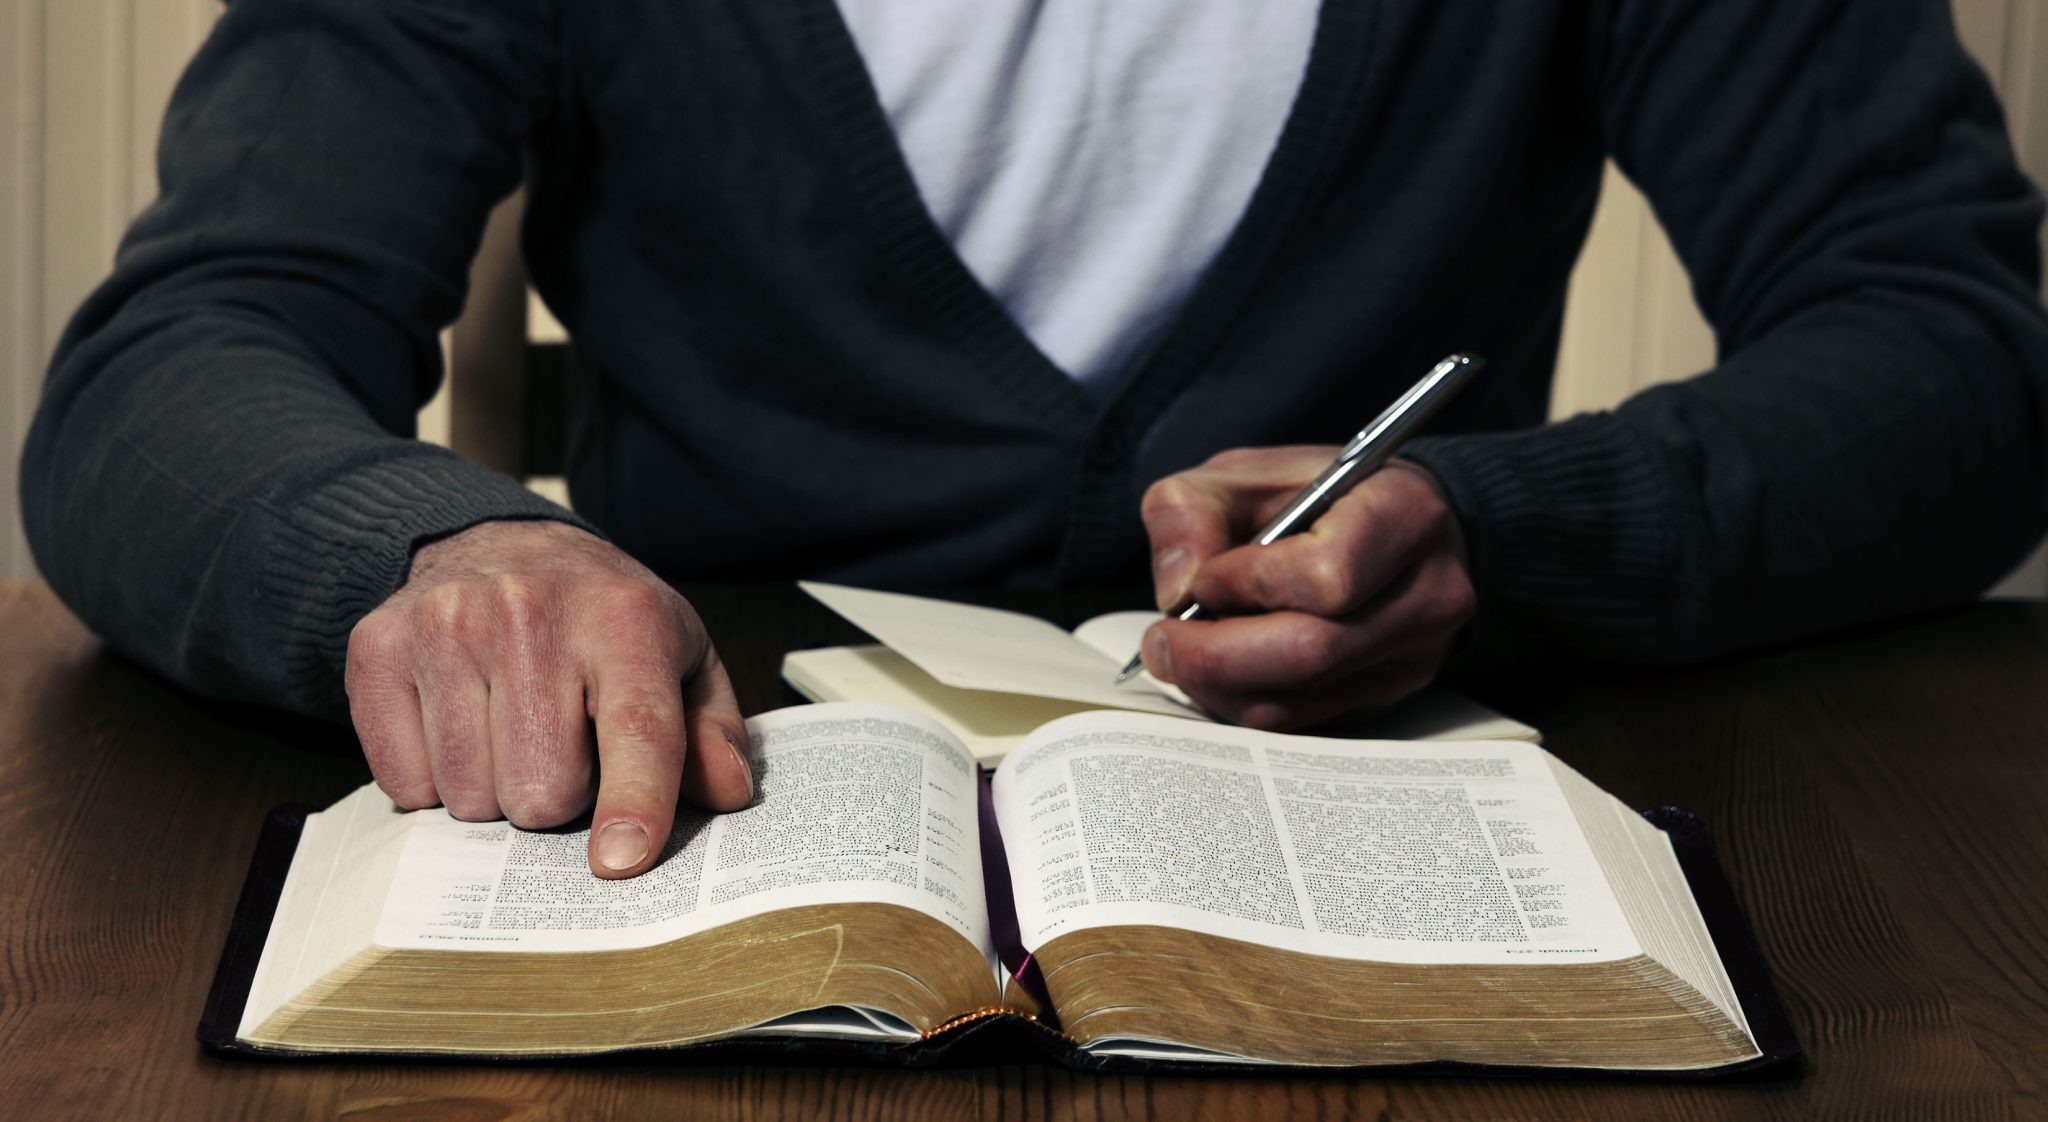 Тетрадь размышлений. Лингвистическая экспертиза. Чтение Библии. Человек с Библией. Человек изучает Библию.